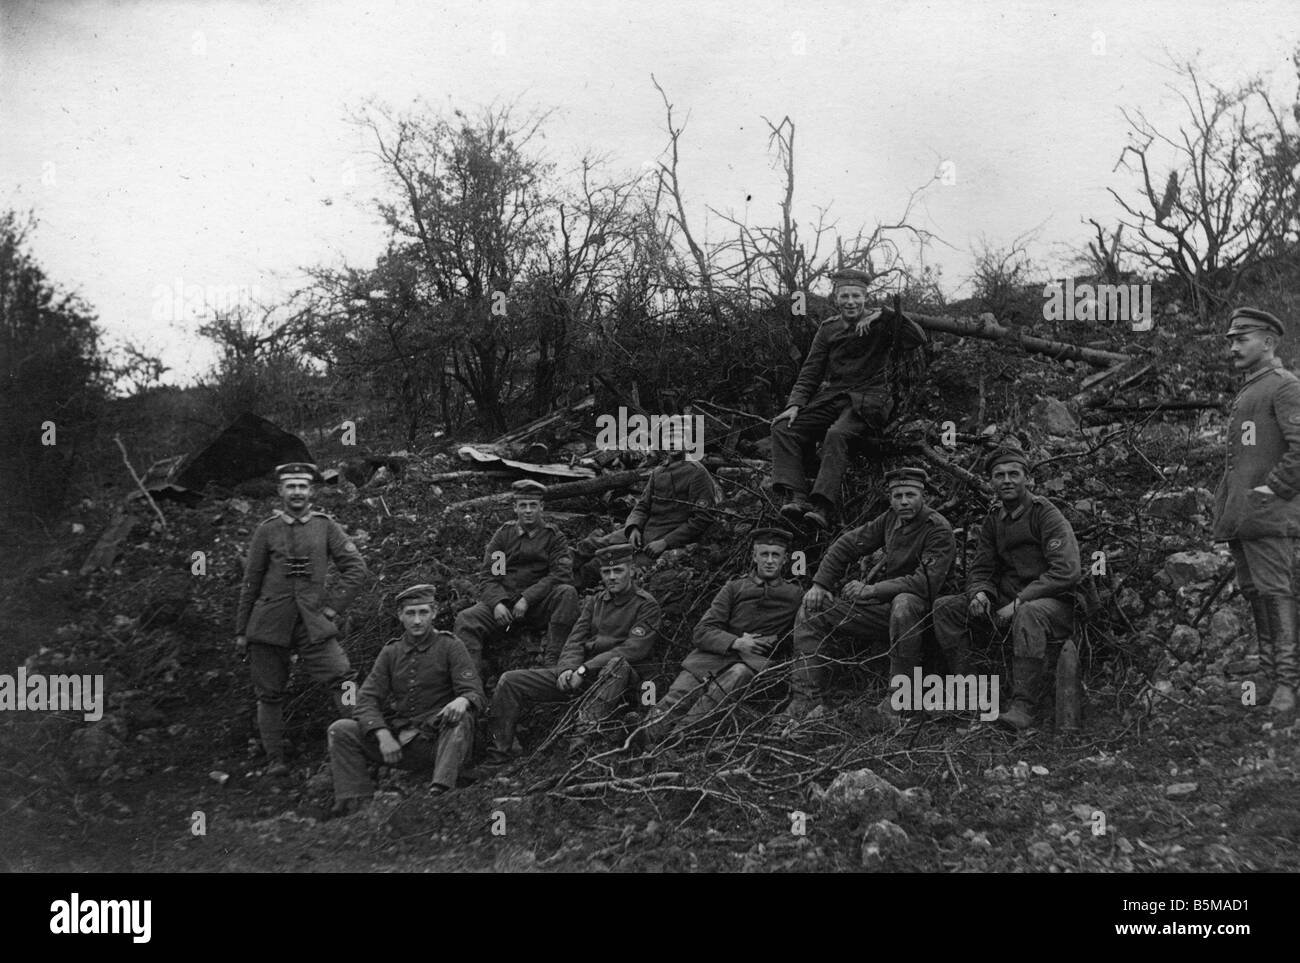 2 G55 W1 1917 17 Western Front 1917 deutsche Soldaten Geschichte Weltkrieg ein Western front Gruppenfoto von deutschen Soldaten auf t Stockfoto